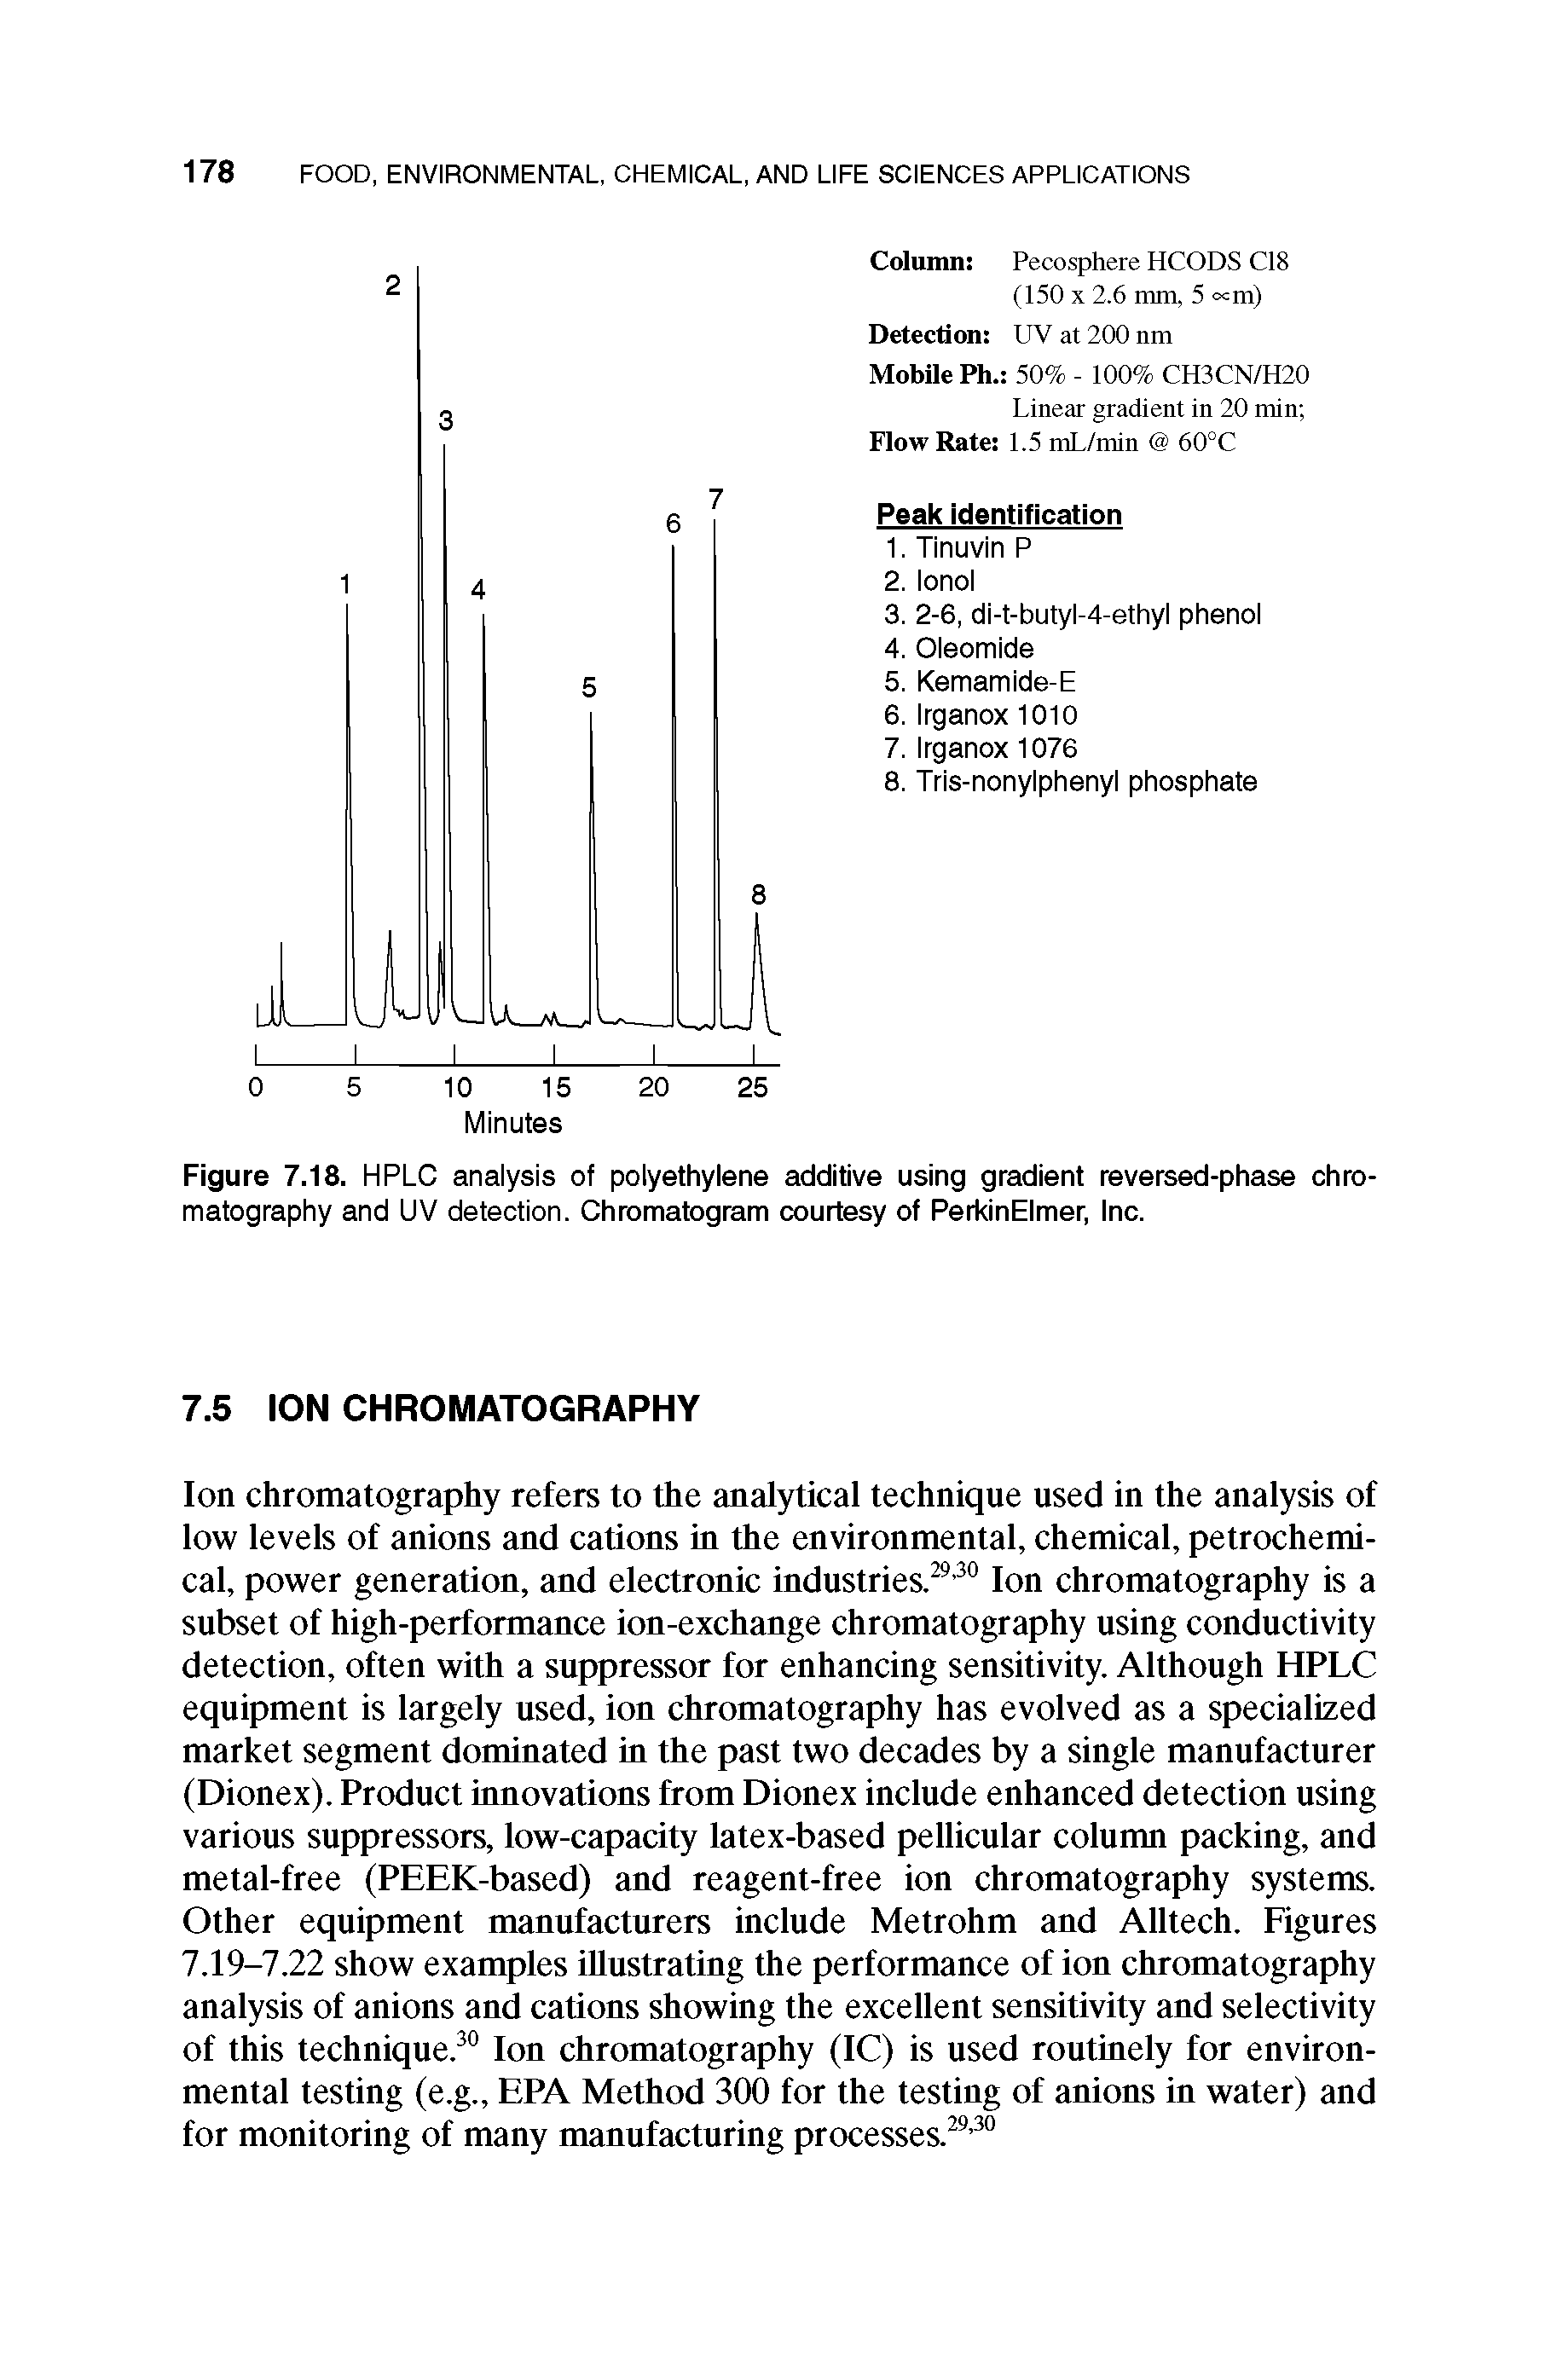 Figure 7.18. HPLC analysis of polyethylene additive using gradient reversed-phase chromatography and UV detection. Chromatogram courtesy of PerkinElmer, Inc.